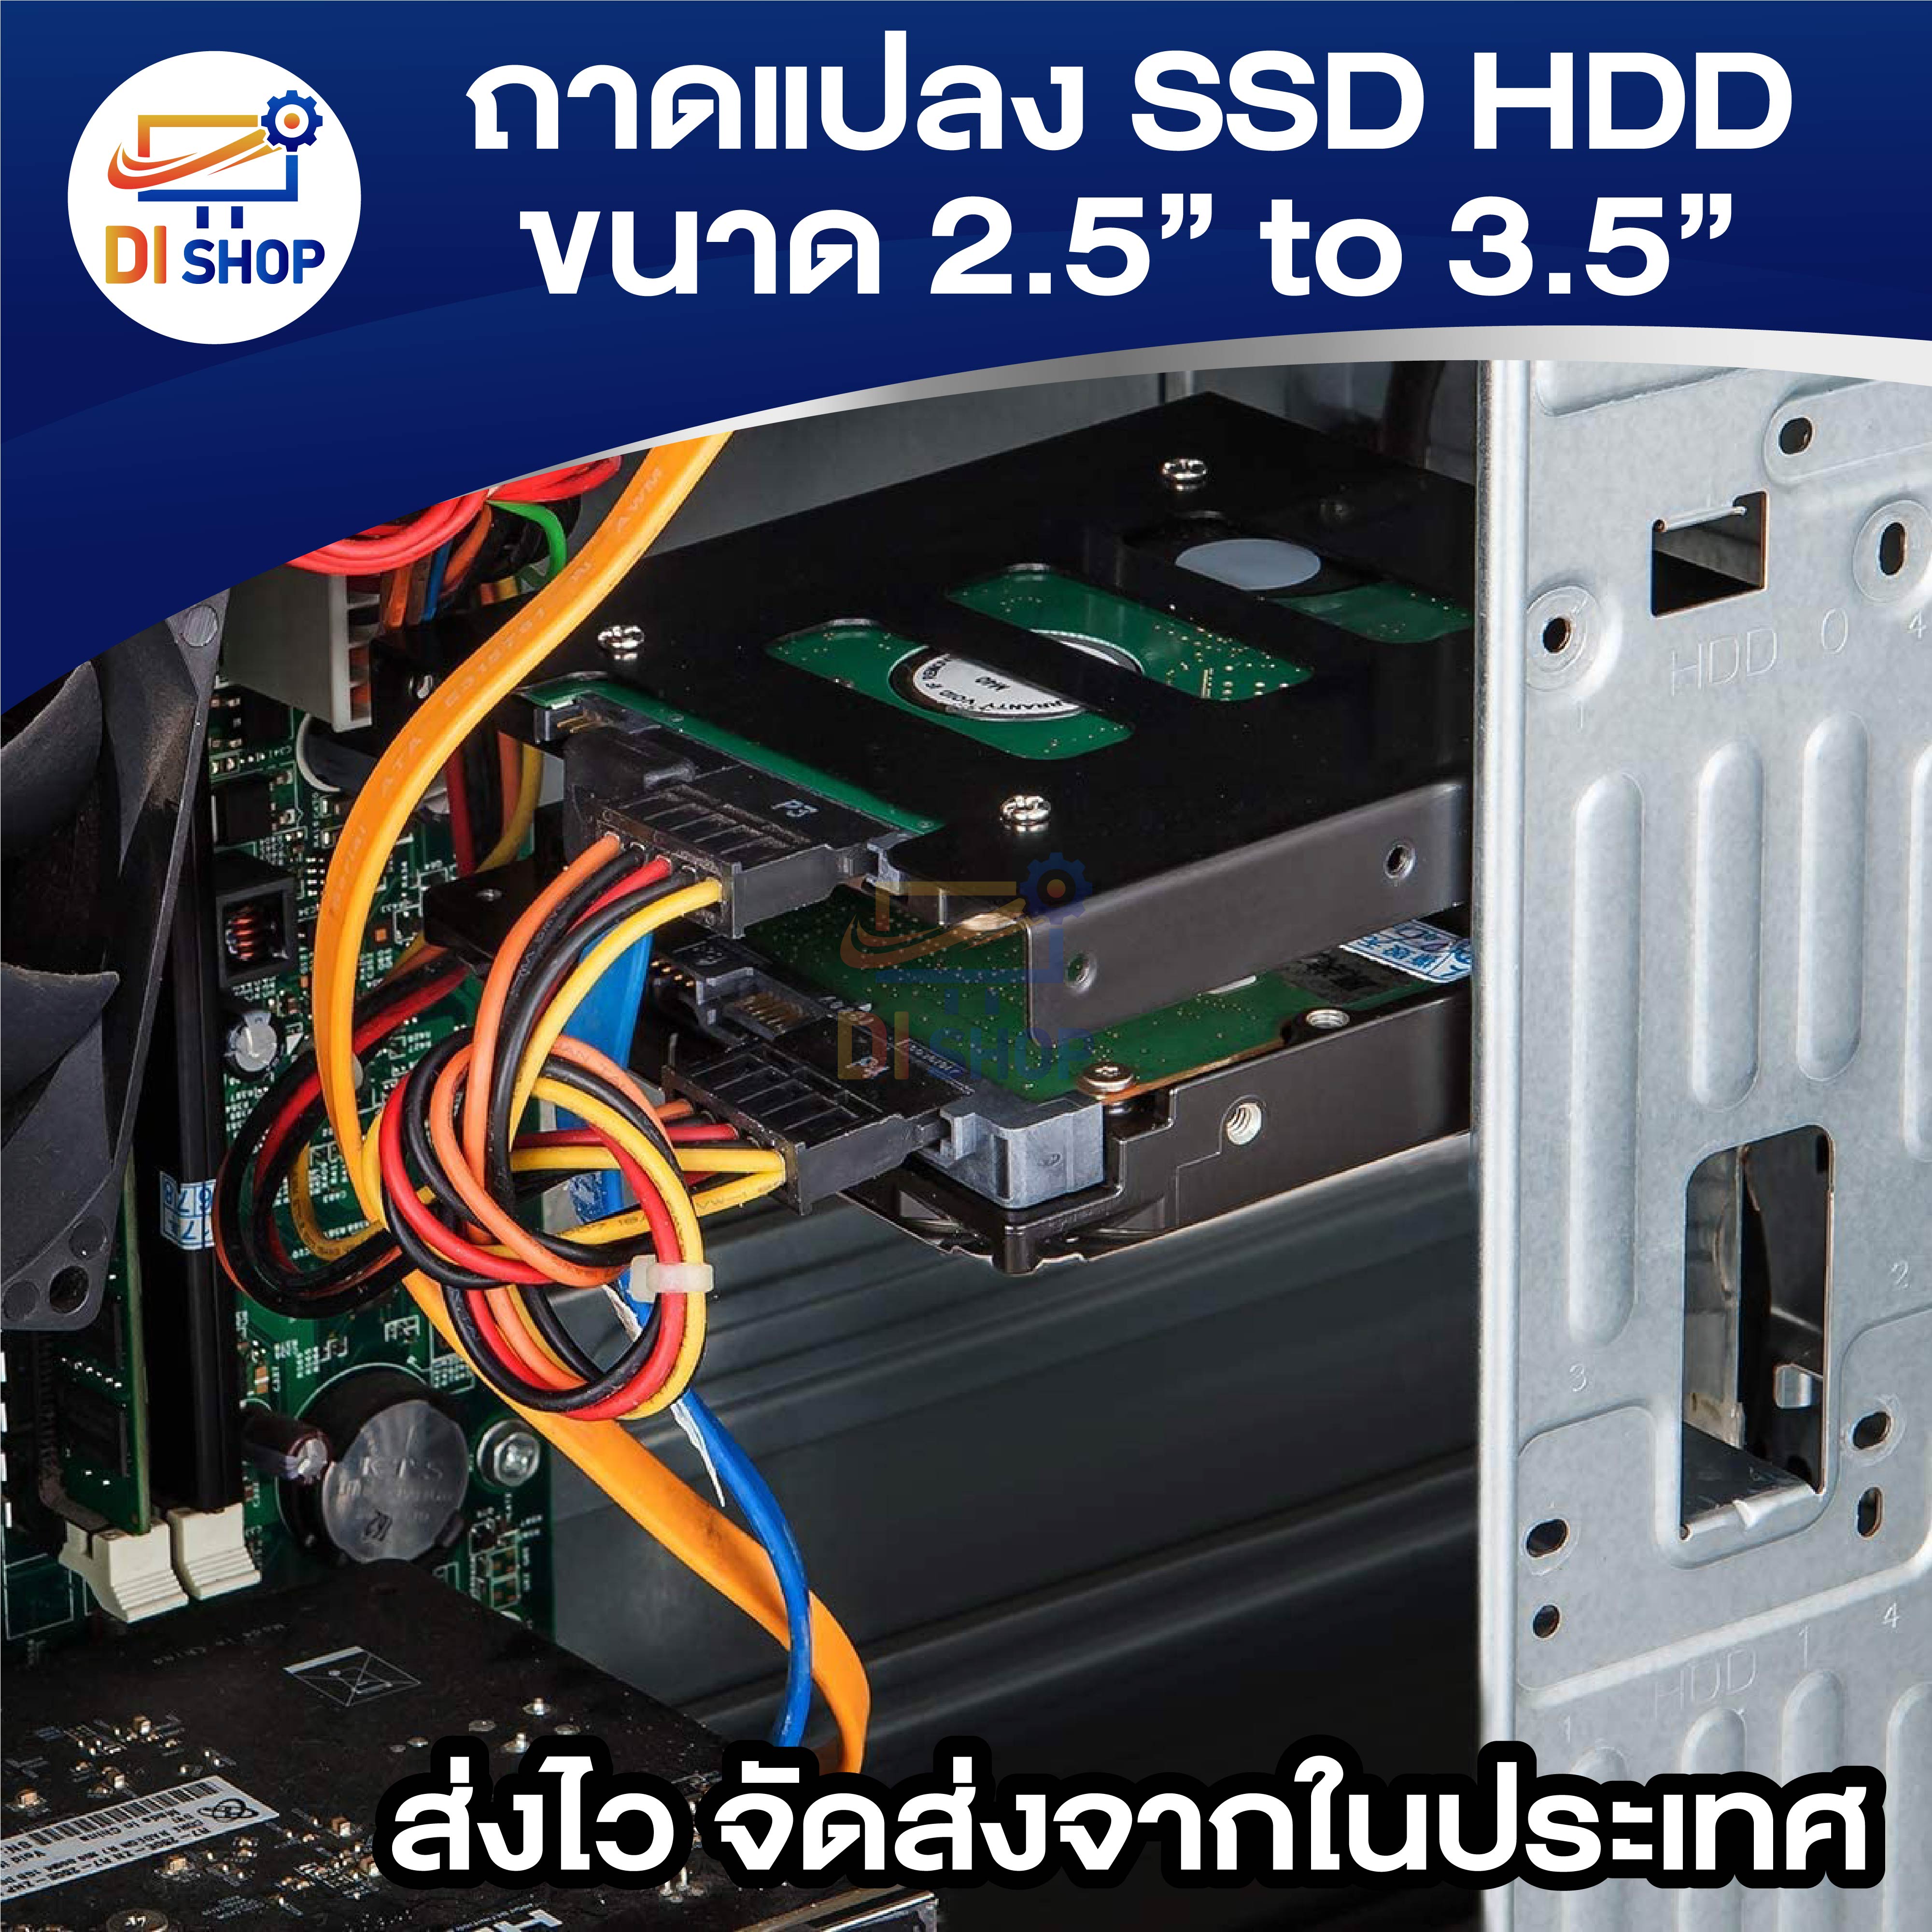 ข้อมูลประกอบของ Di shop ถาดแปลงฮาร์ดดิสก์ / SSD ขนาด 2.5 to 3.5